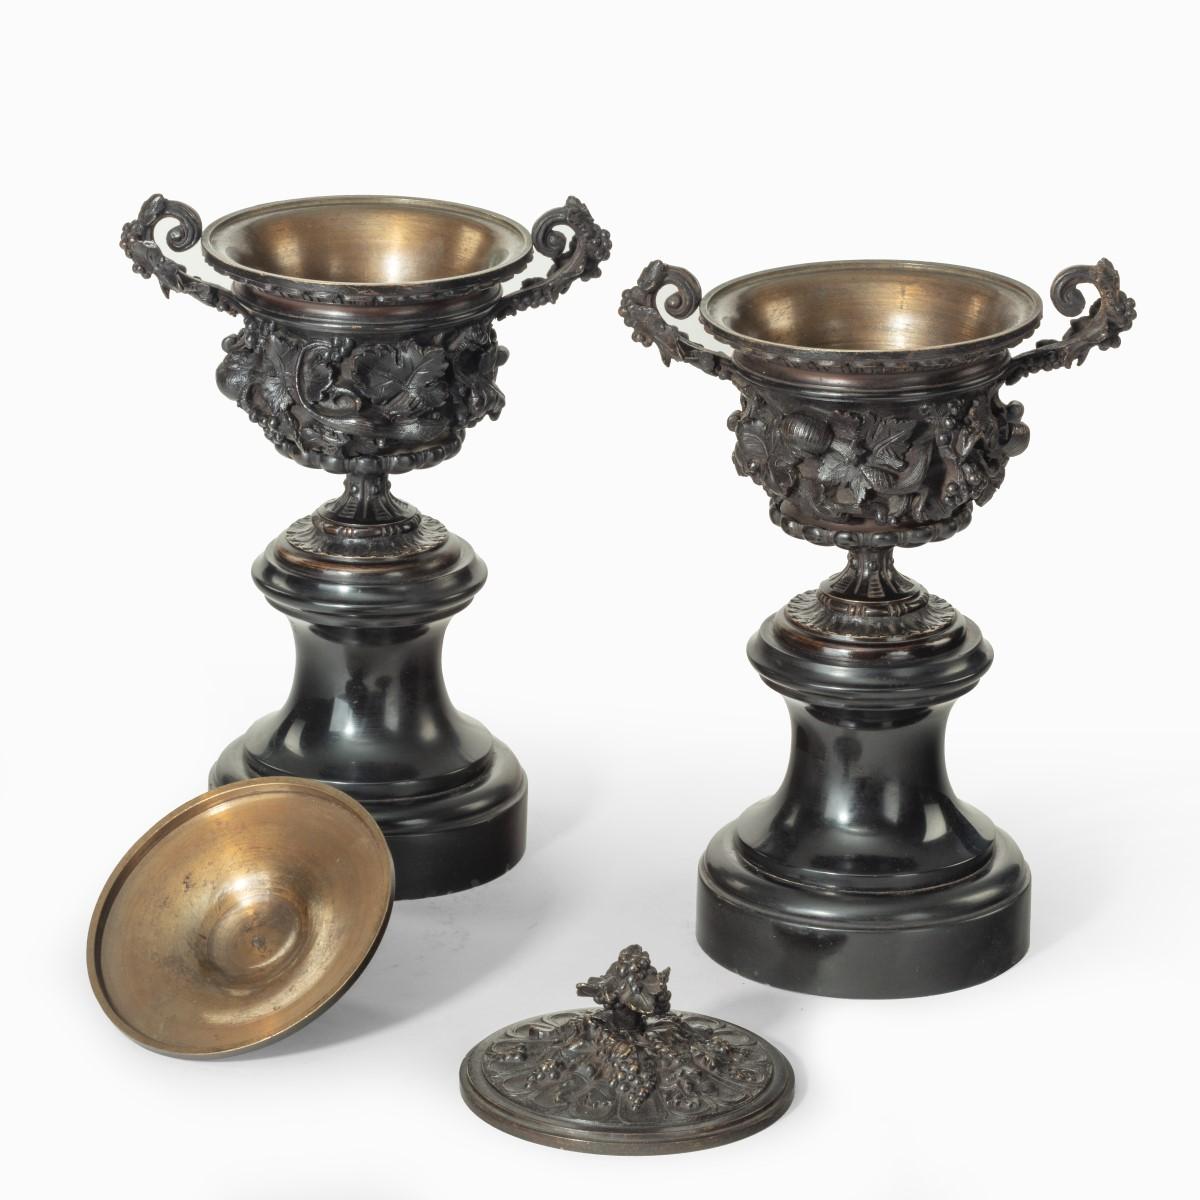 Ein feines Paar Bronzeurnen oder Vasen und Deckel nach einem Entwurf, der vermutlich von dem französischen Animalier Auguste Nicolas Cain stammt (um 1870)

Die Urnen stehen jeweils auf einem geformten Sockel aus schwarzem Marmor, der im Hochrelief